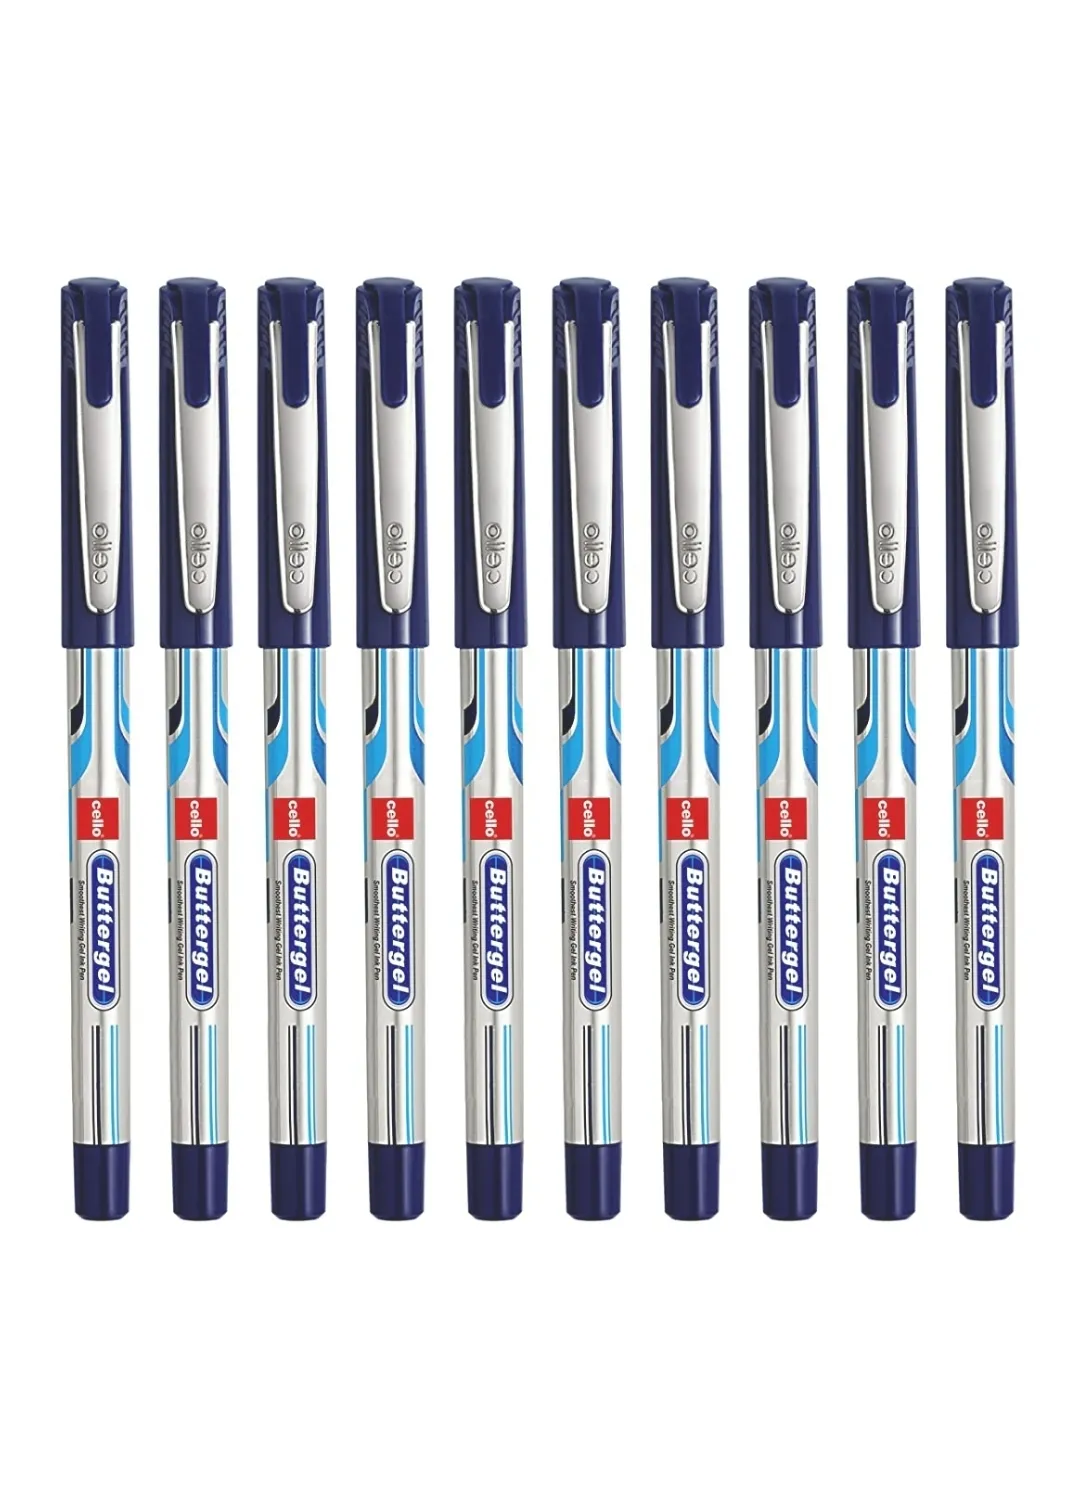 Cello ButterGel Gel Pen 0.5 mm Blue Pen Pack of 1